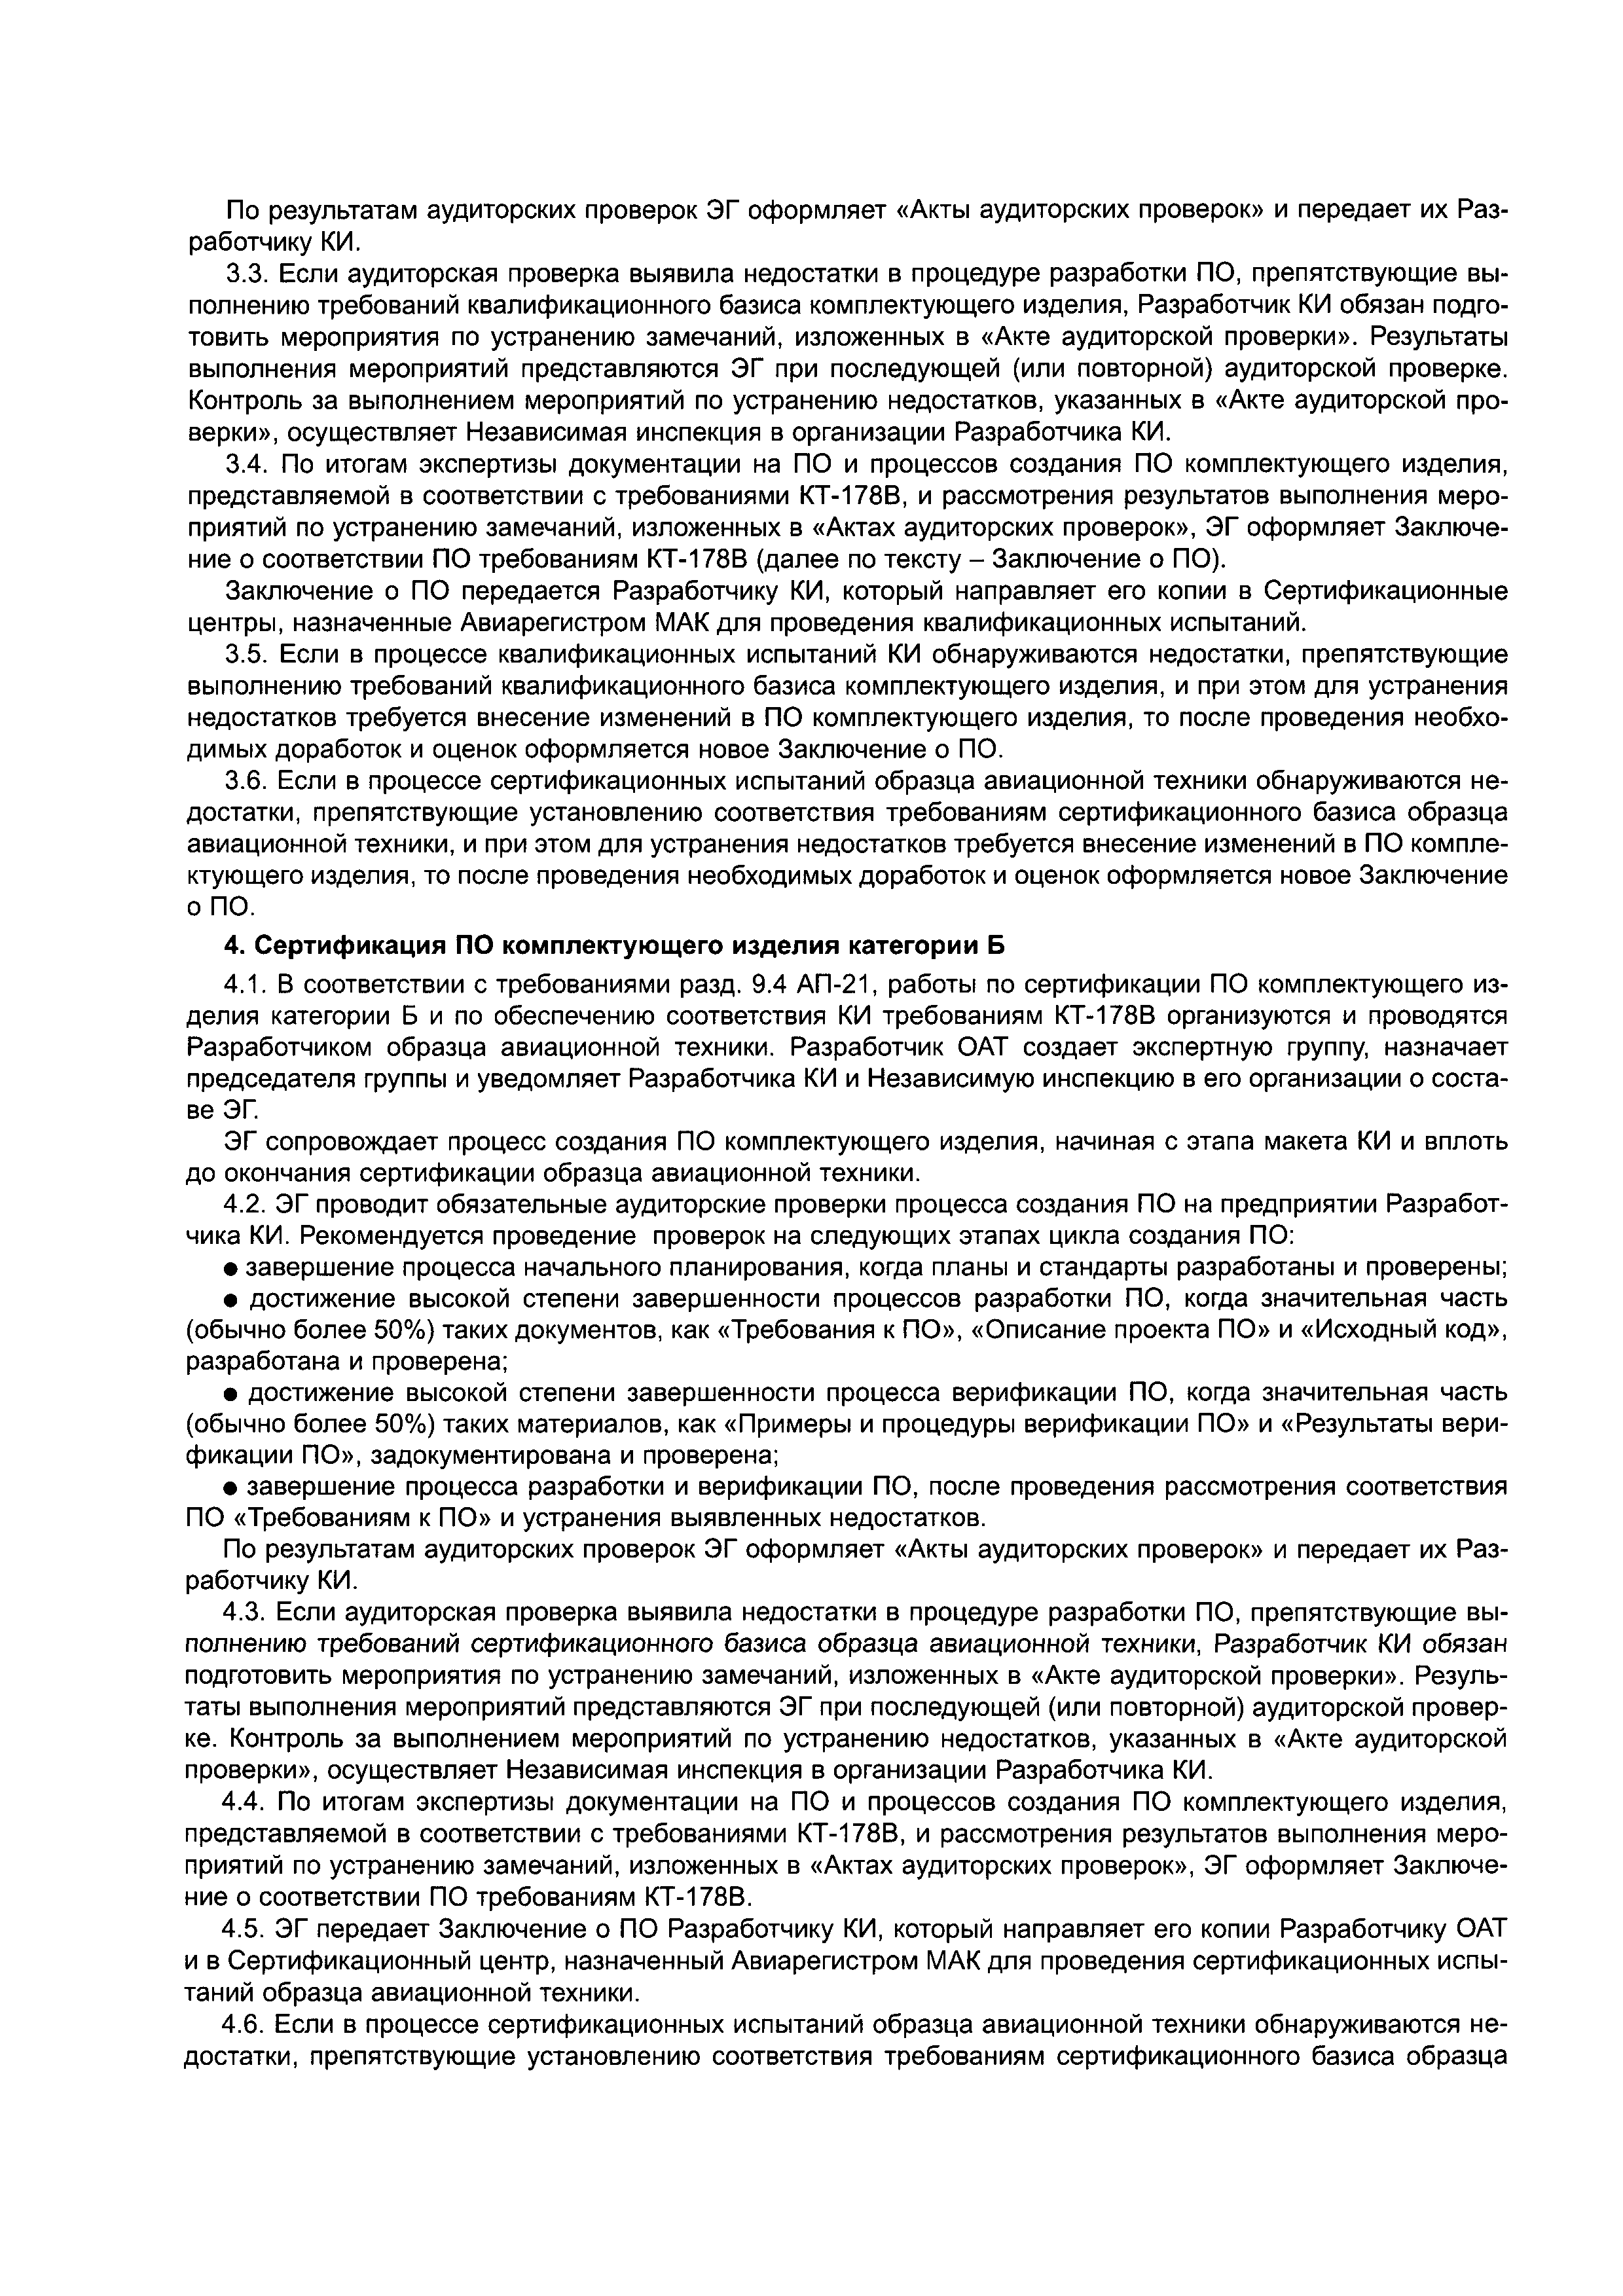 Директивное письмо 06-2004